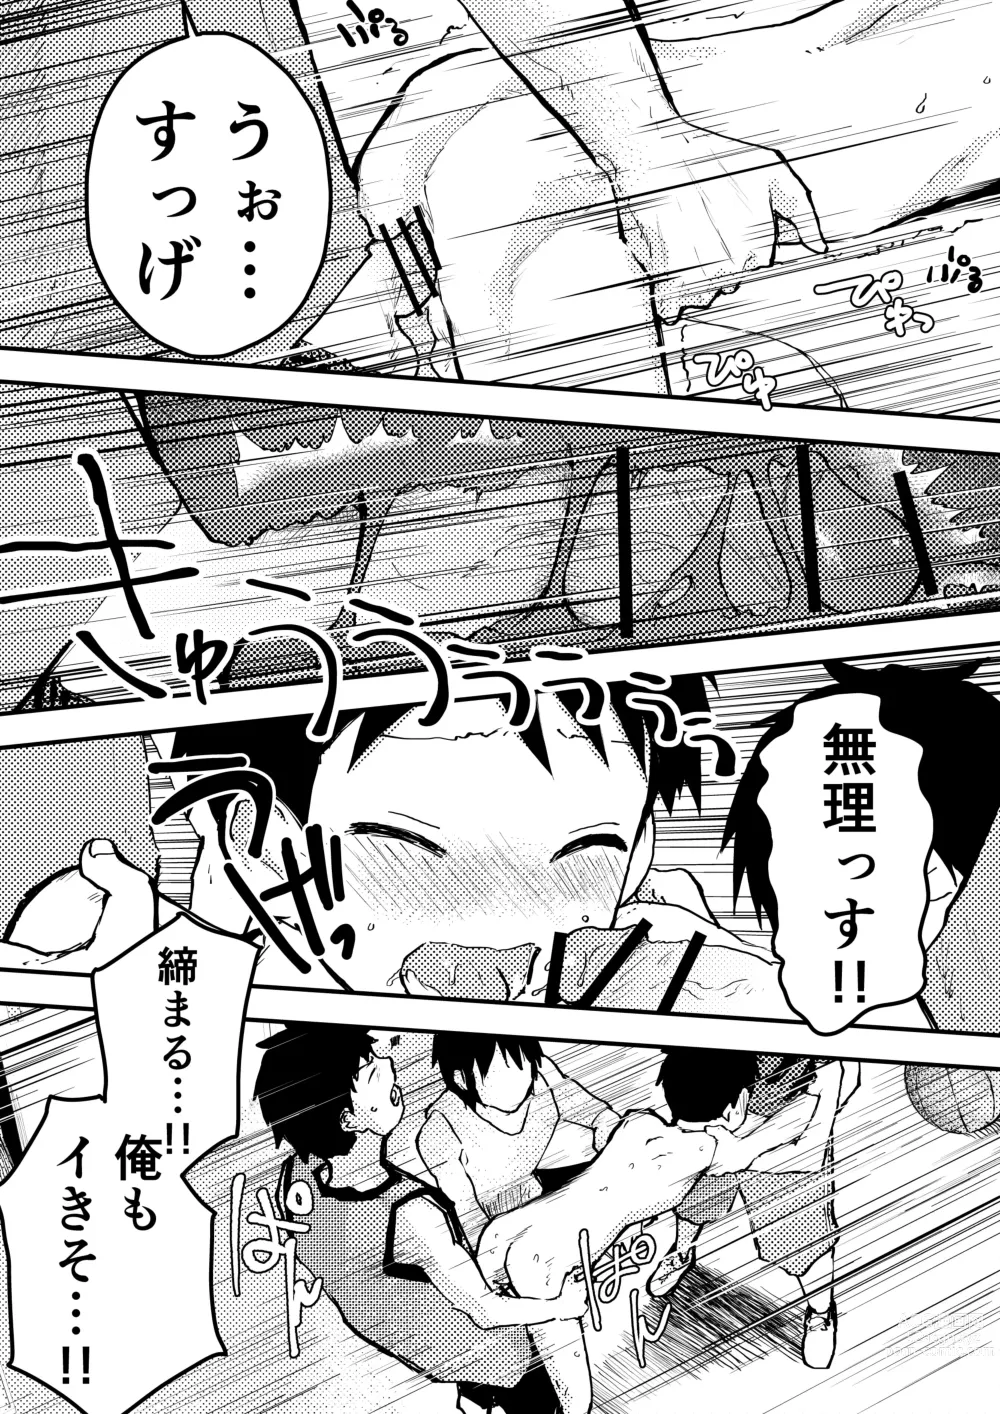 Page 17 of doujinshi Baske ga Heta dakara Shikata ga nai!